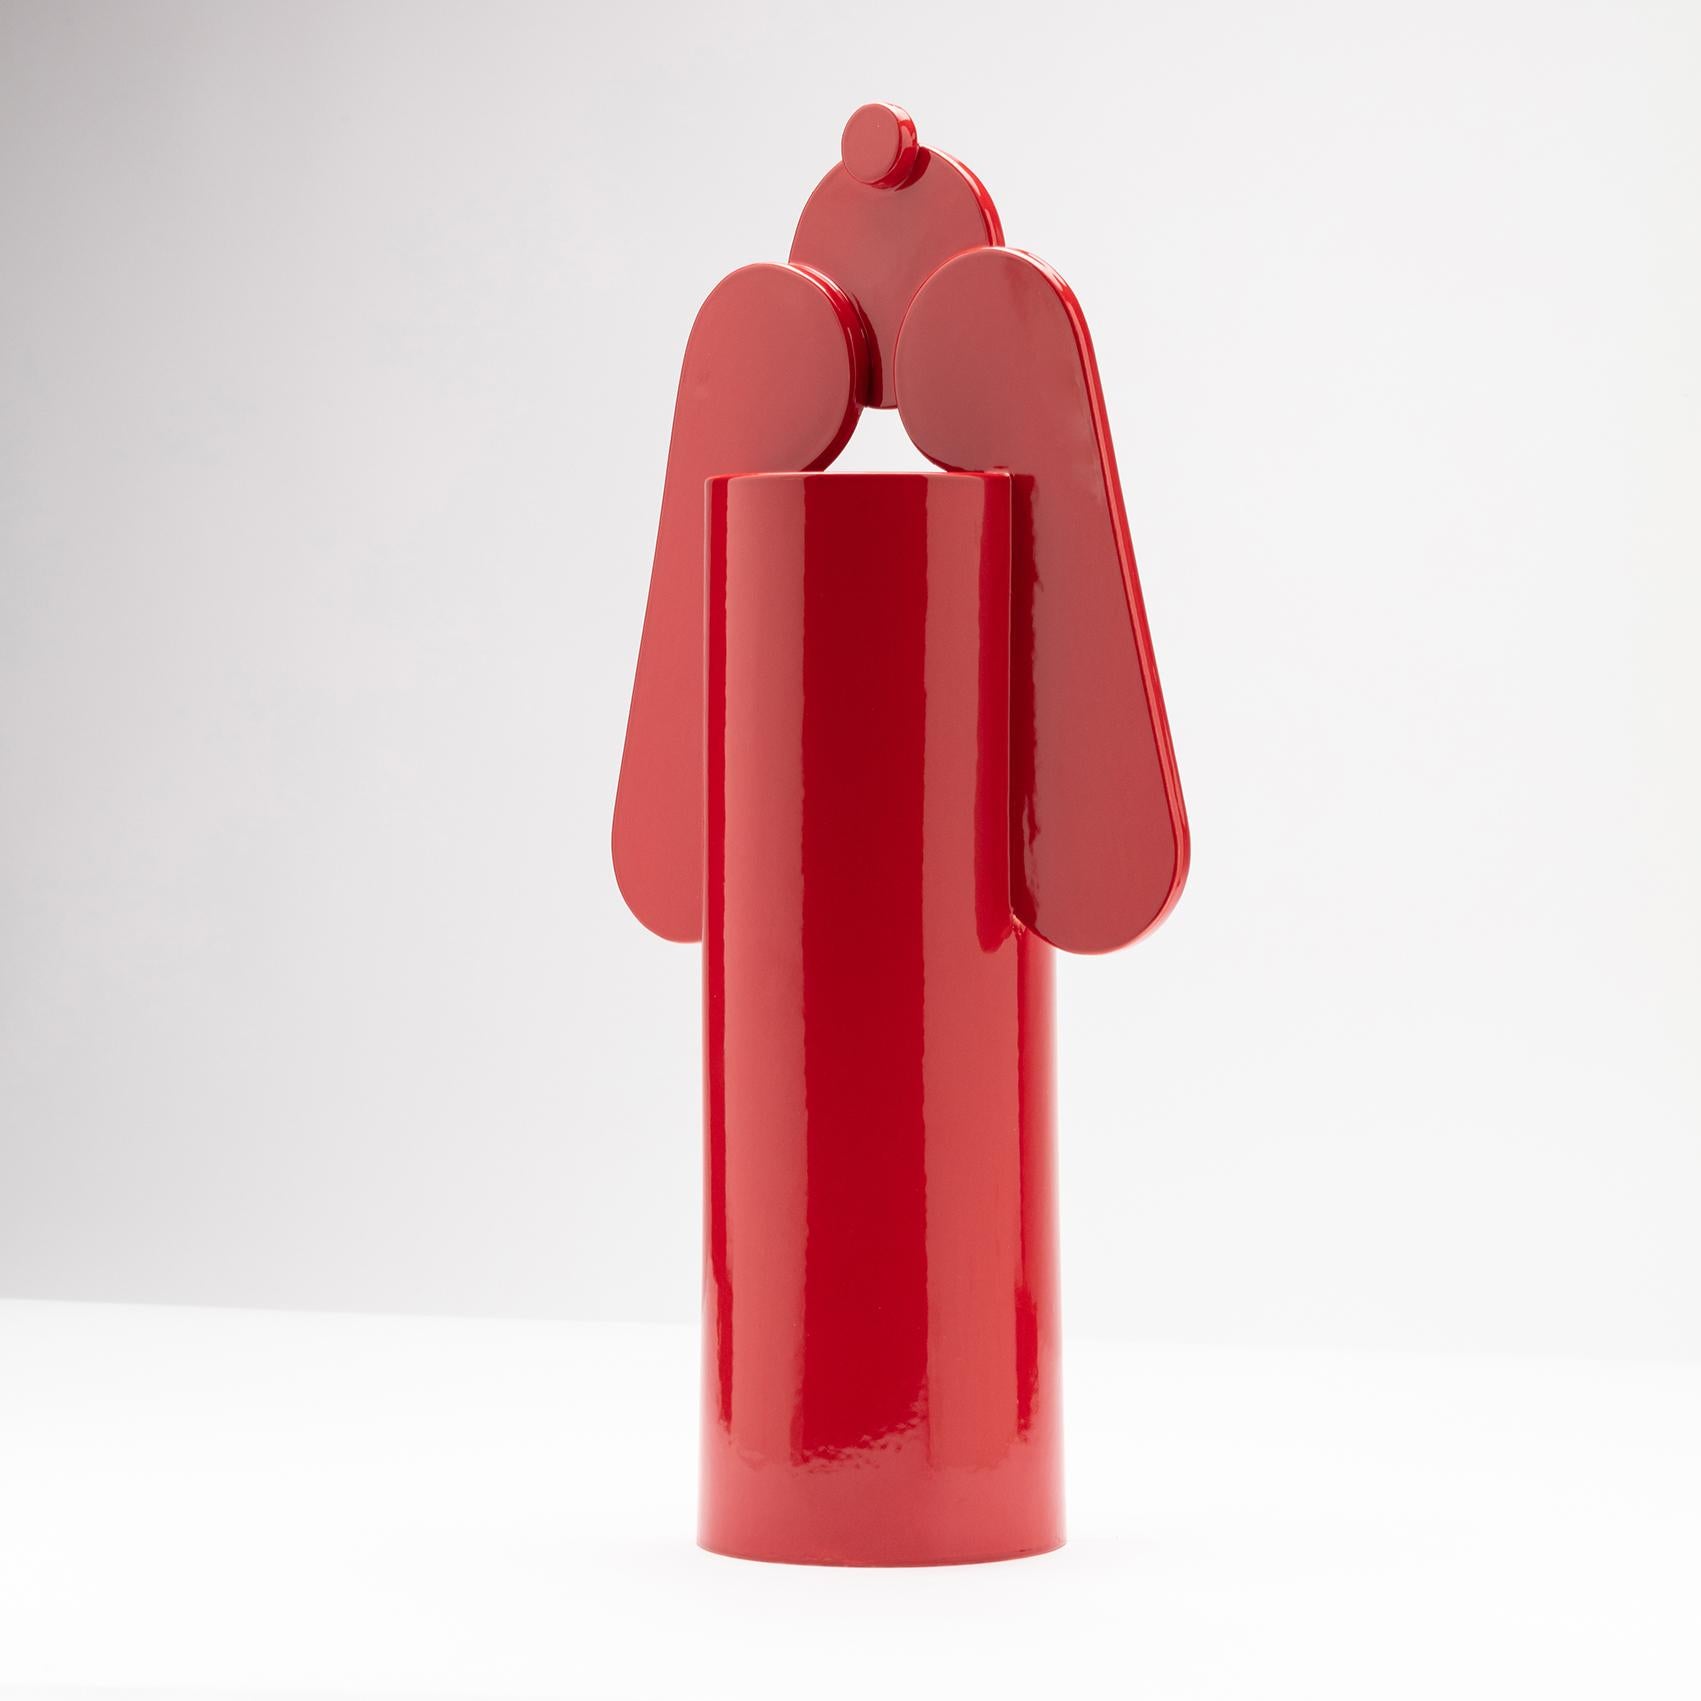 Italian Contemporary Ceramic Set Duo Vases Red Glossy glazed CUORECARPENITO ME∞TE For Sale